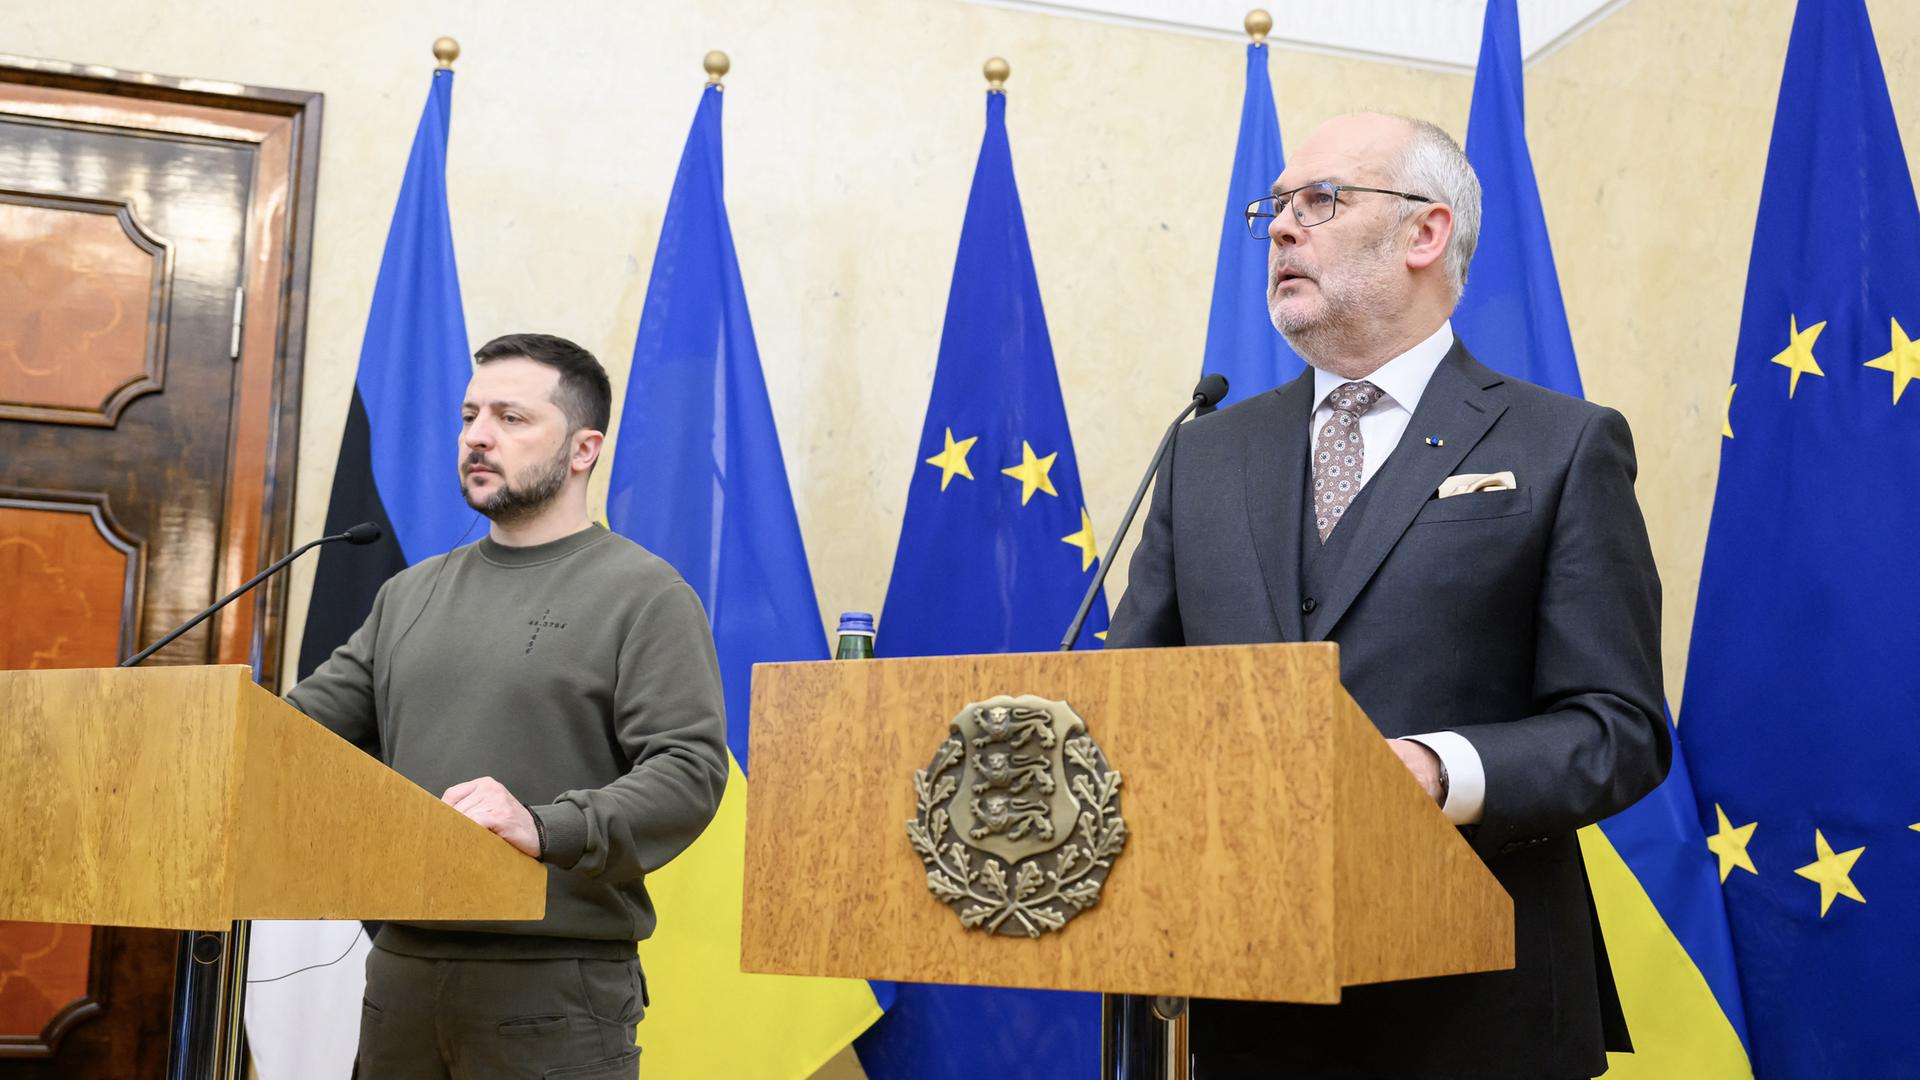 Der ukrainische Präsident Selenskyj und sein estnischer Amtskollege Karis stehen jhinter Rednerpulten. Hinter ihnen die ukrainische, die estnische und die EU-Fahne. 